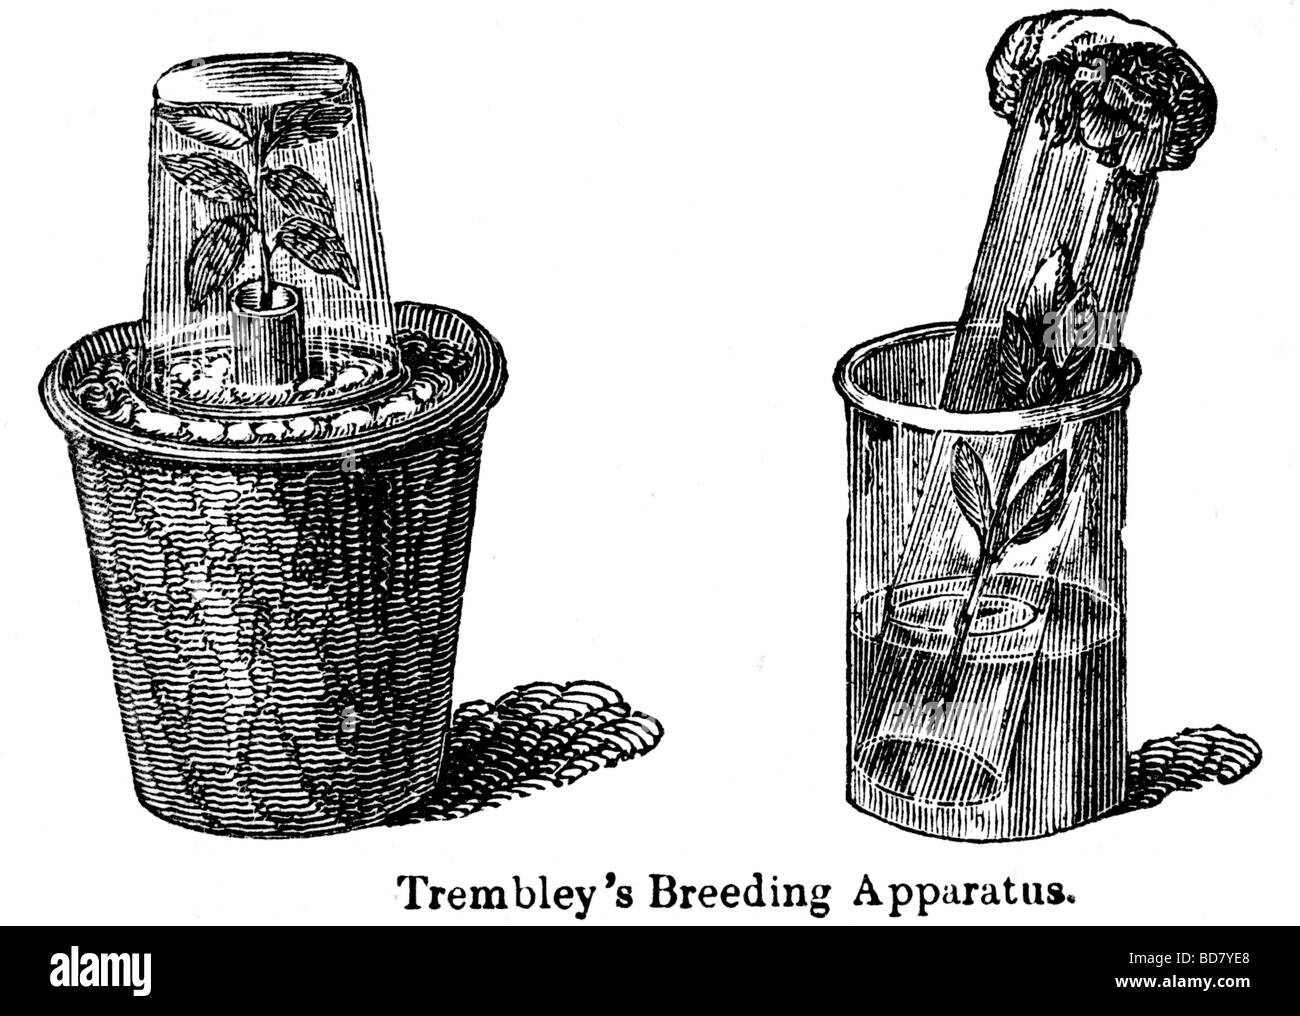 trembley's breeding apparatus Stock Photo